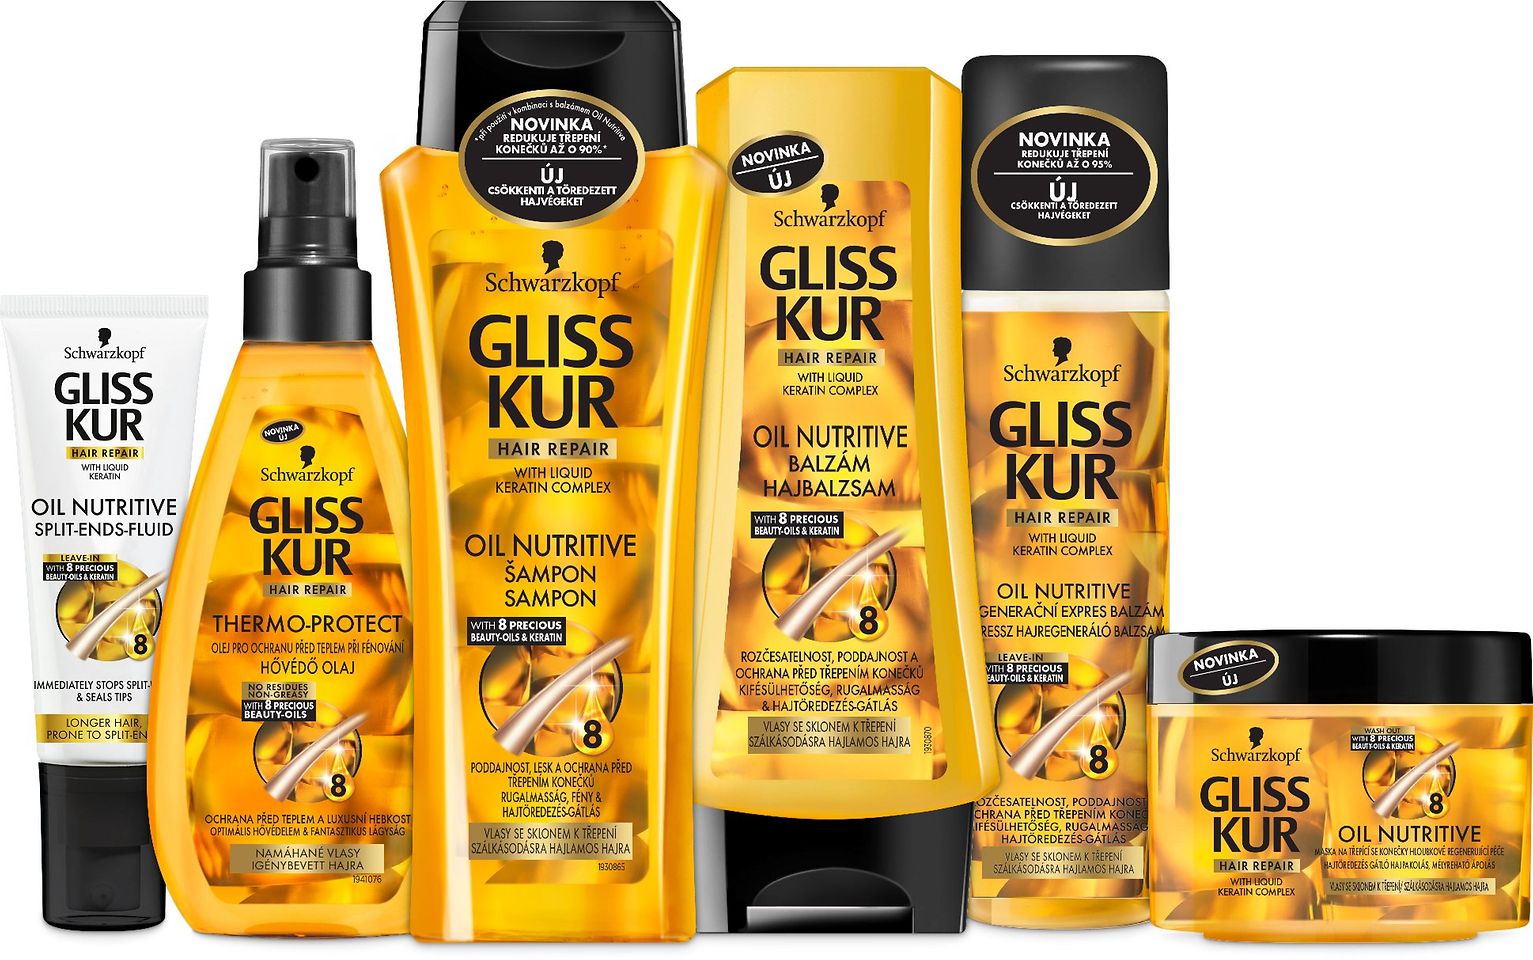 
Nový, vylepšený rad Schwarzkopf Gliss Kur Oil Nutritive